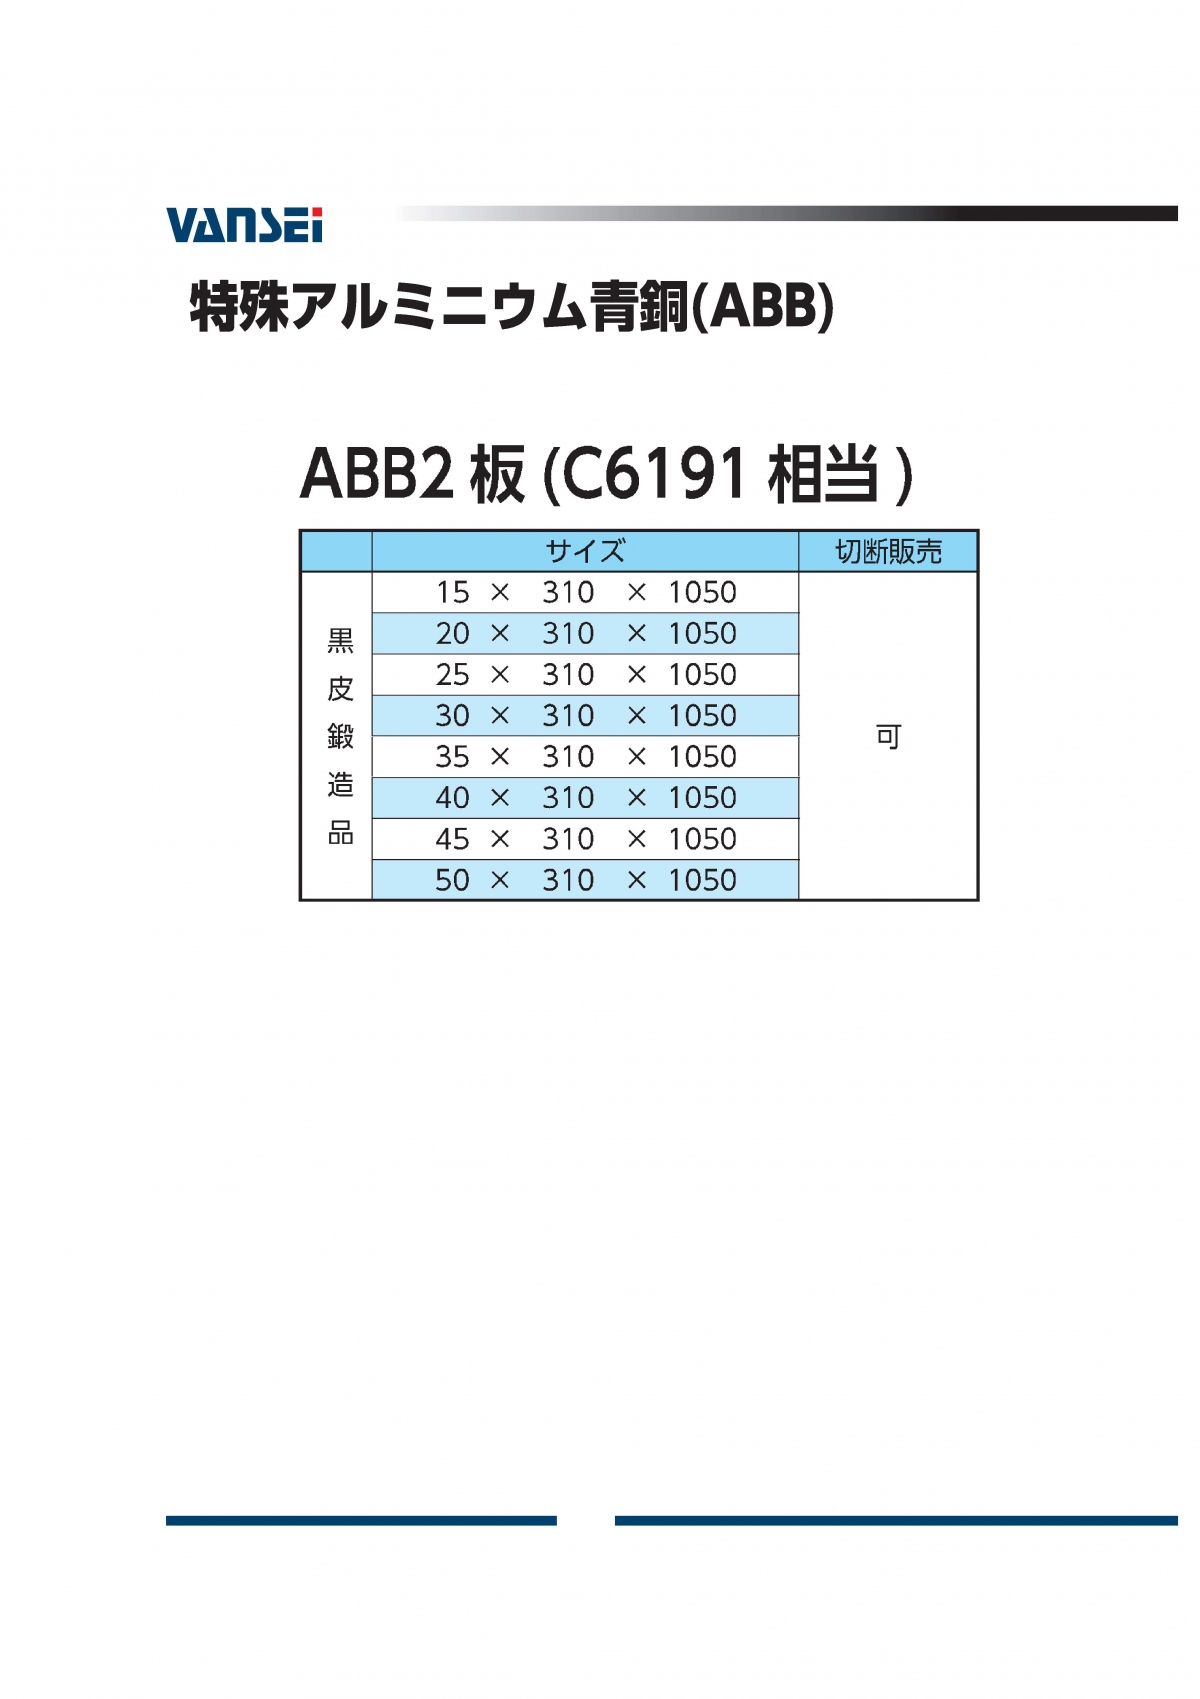 ABB2板(C6191相当)